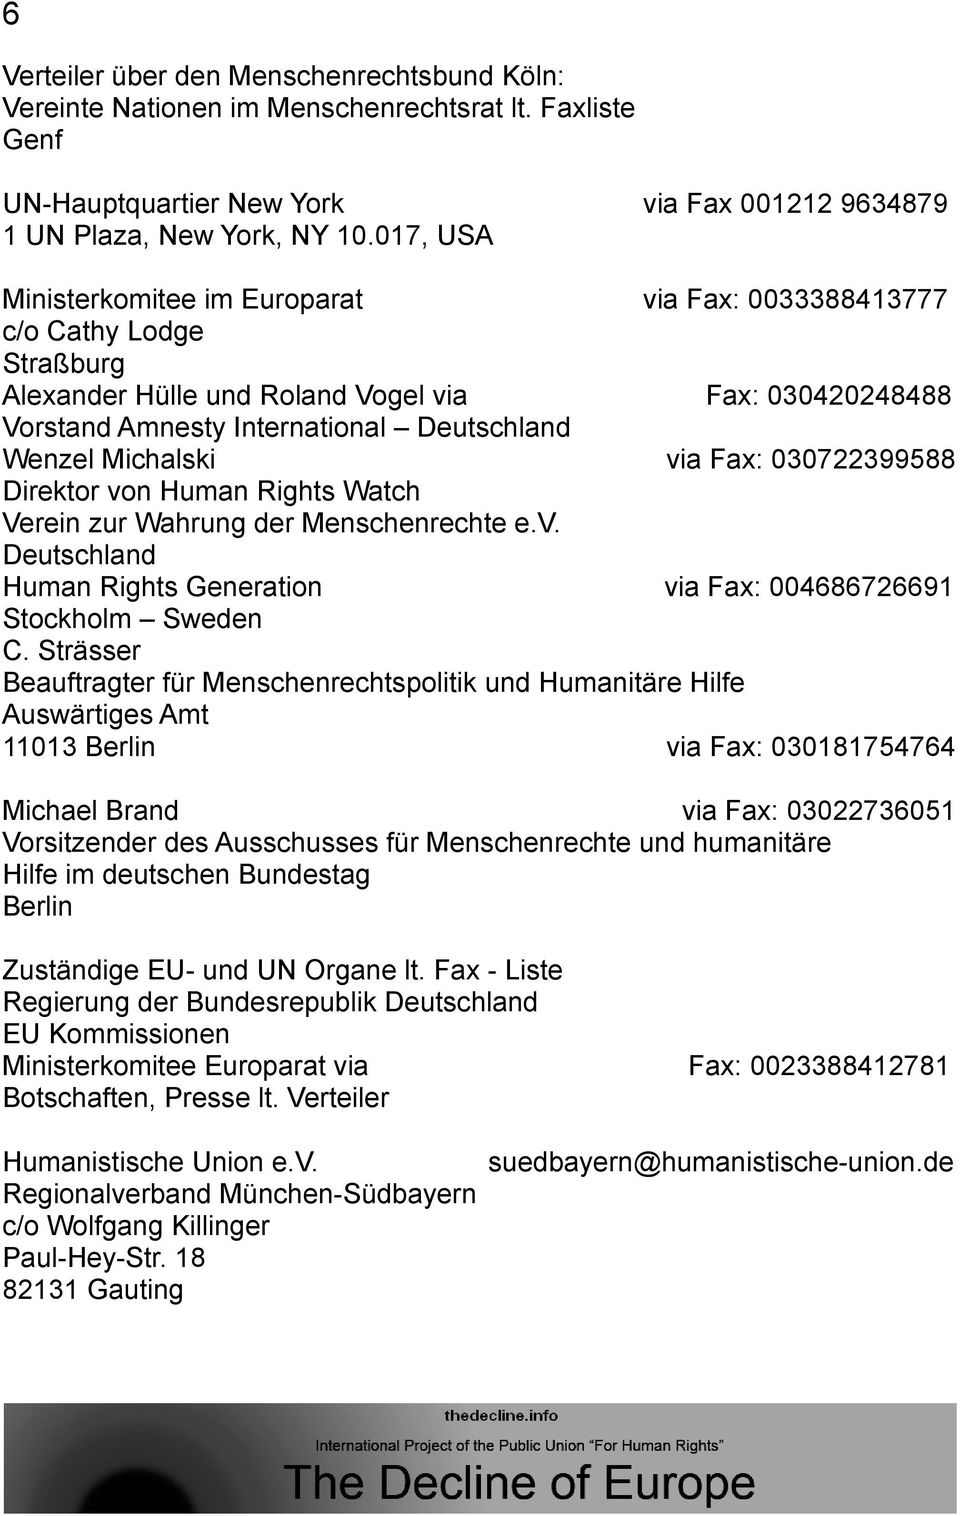 Michalski via Fax: 030722399588 Direktor von Human Rights Watch Verein zur Wahrung der Menschenrechte e.v. Deutschland Human Rights Generation via Fax: 004686726691 Stockholm Sweden C.